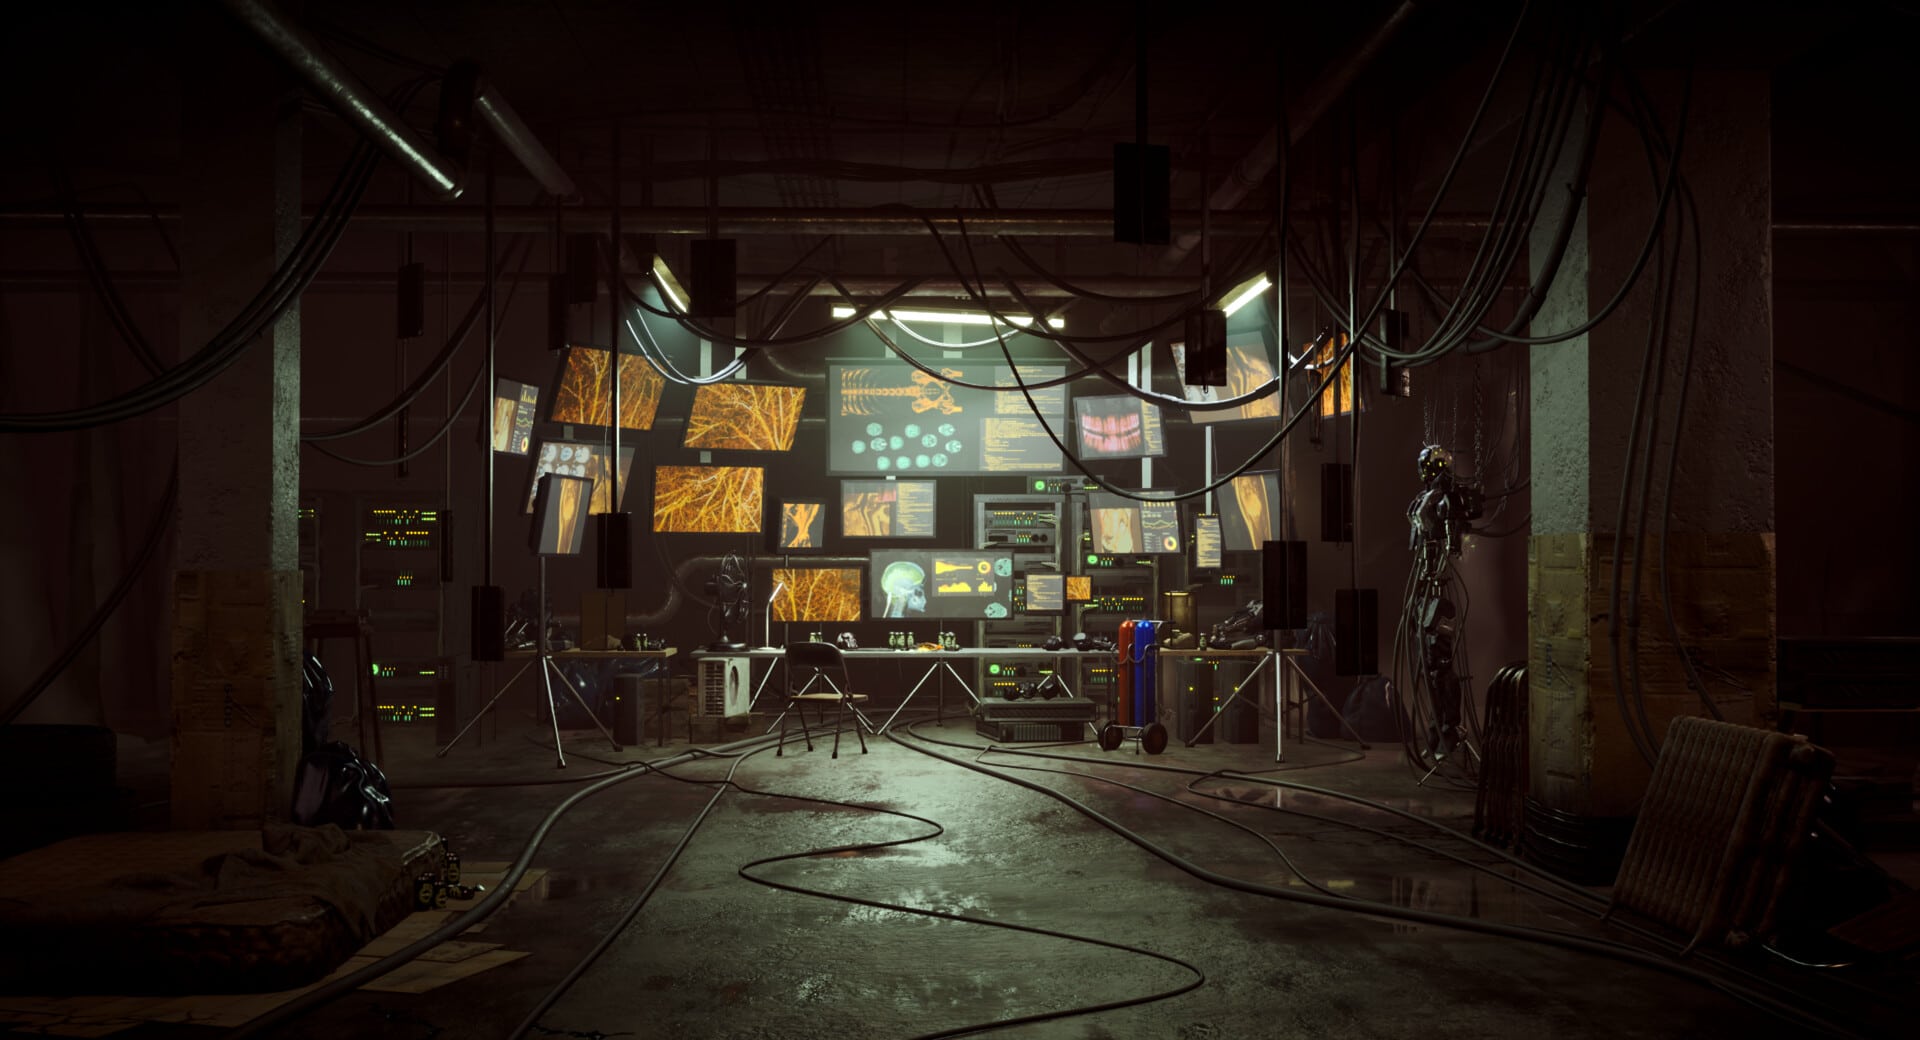 Die Szene zeigt einen dunklen, verschmutzten Raum mit vielen Monitoren, auf denen ein menschliches Skelett und Nervenbahnen zu sehen sind